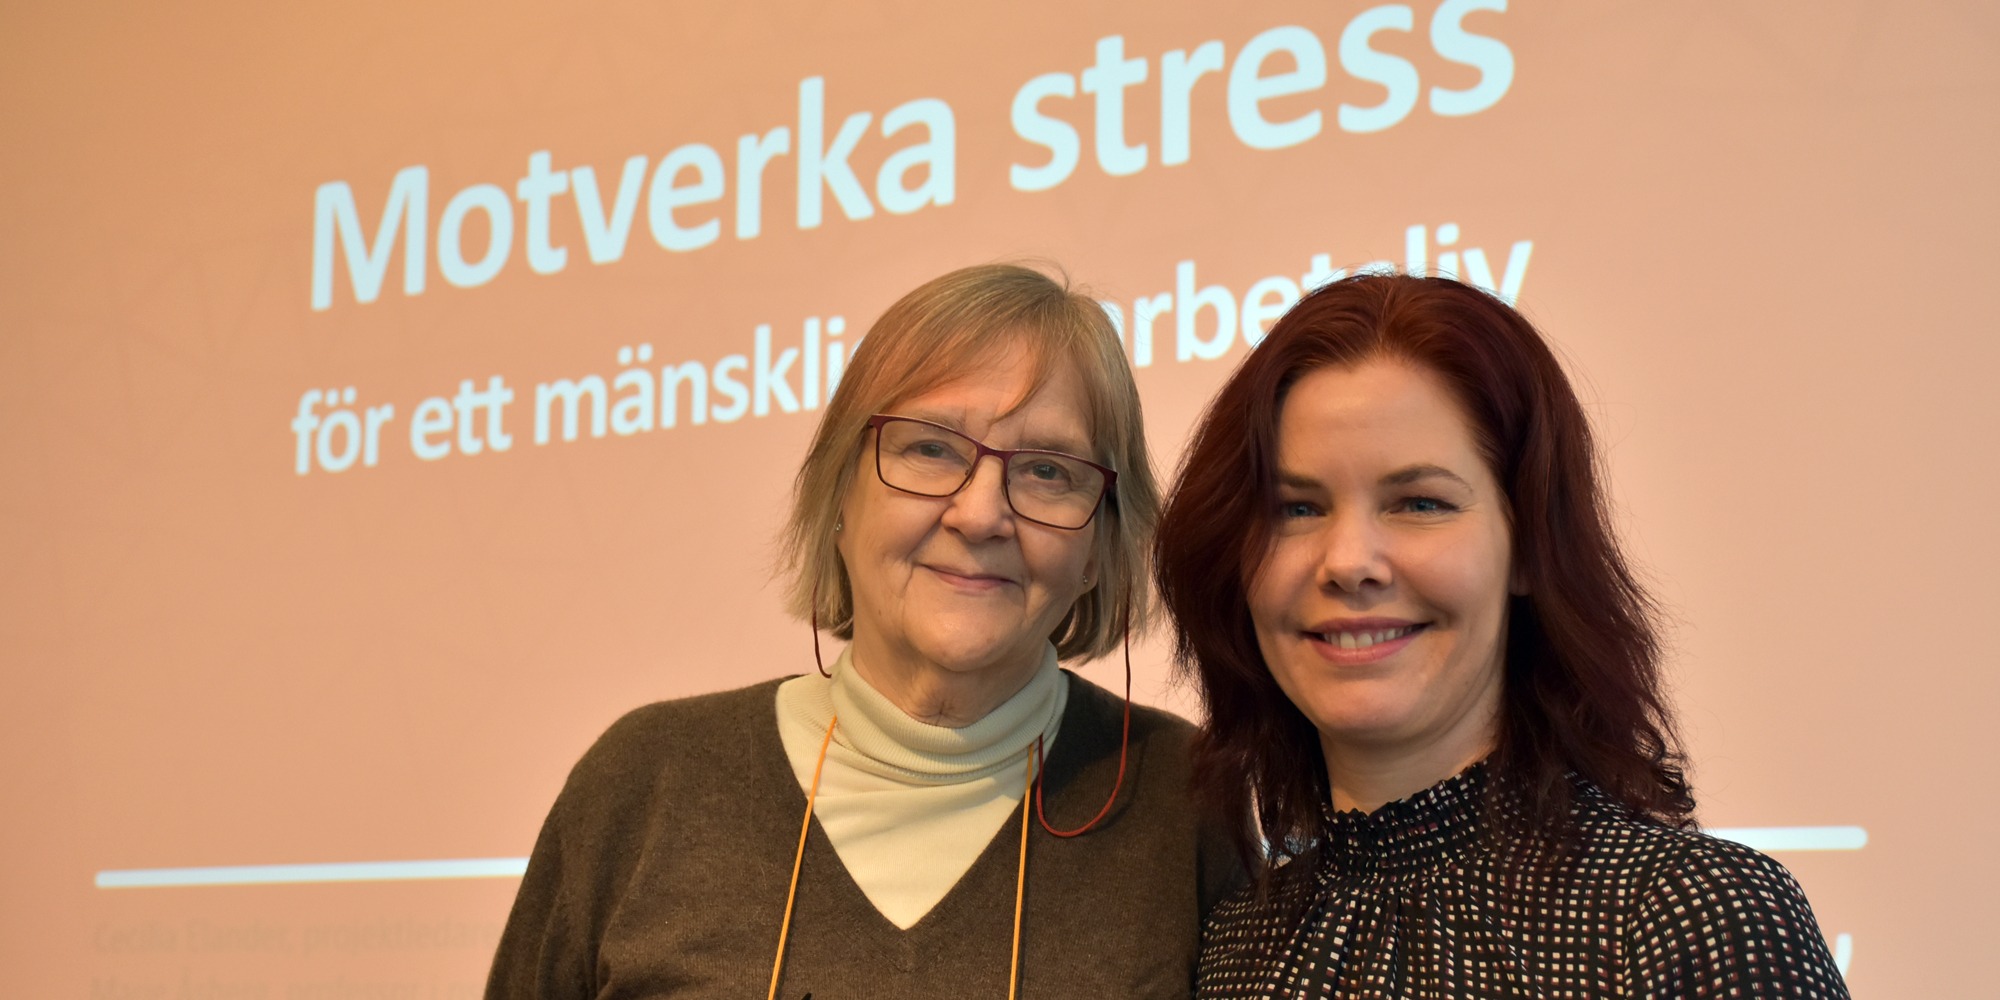 Marie Åsberg och Cecilia Elander ler in i kamera framför stor skärm där det står motverka stress